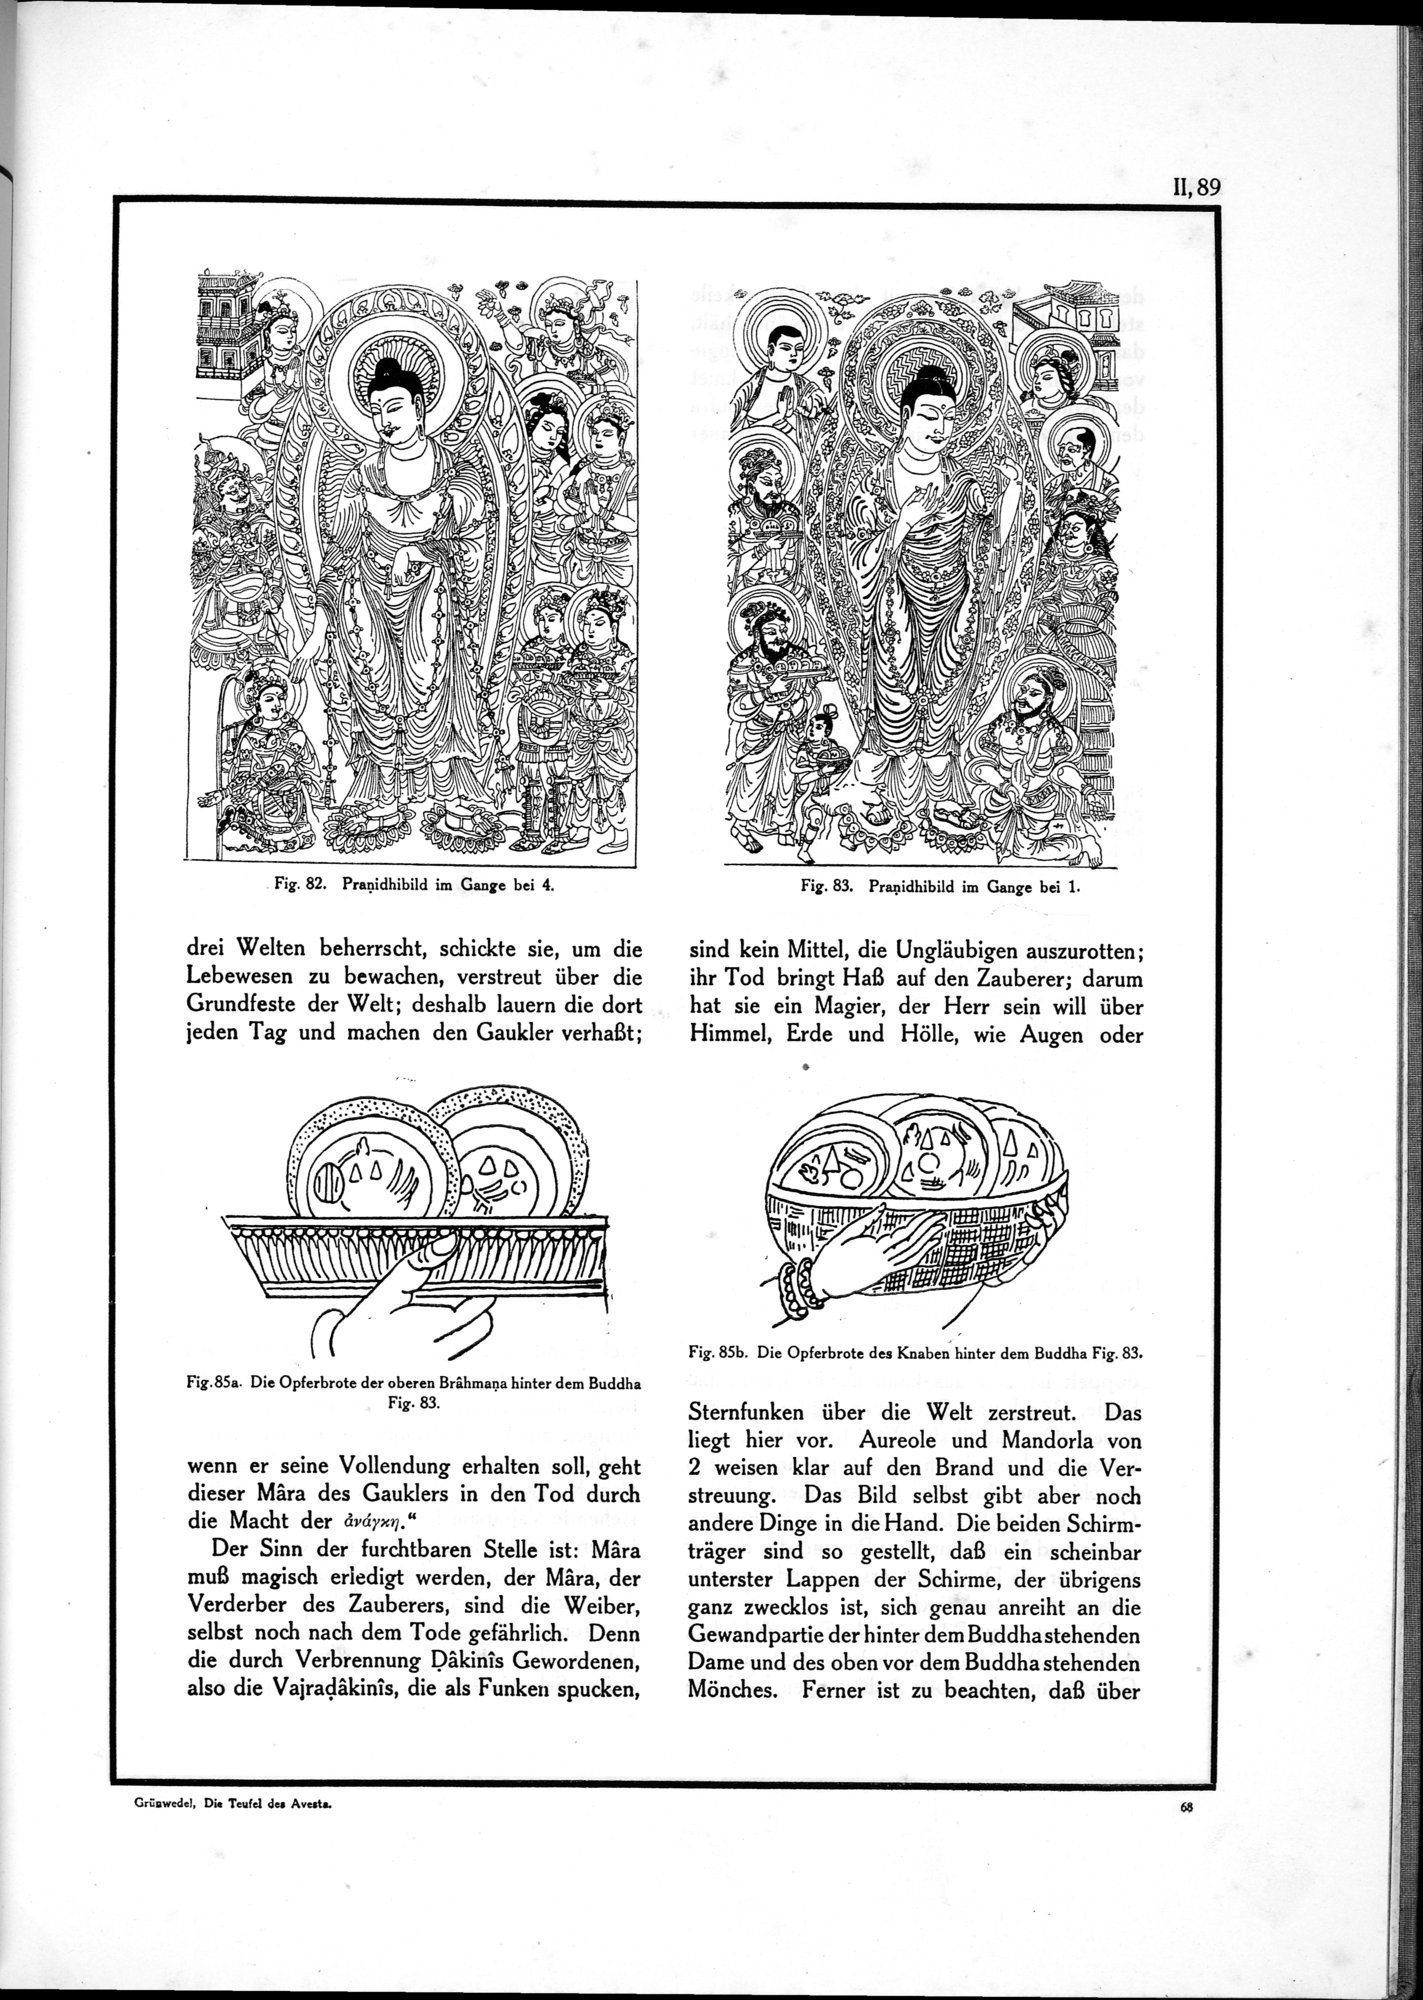 Die Teufel des Avesta und Ihre Beziehungen zur Ikonographie des Buddhismus Zentral-Asiens : vol.1 / Page 545 (Grayscale High Resolution Image)